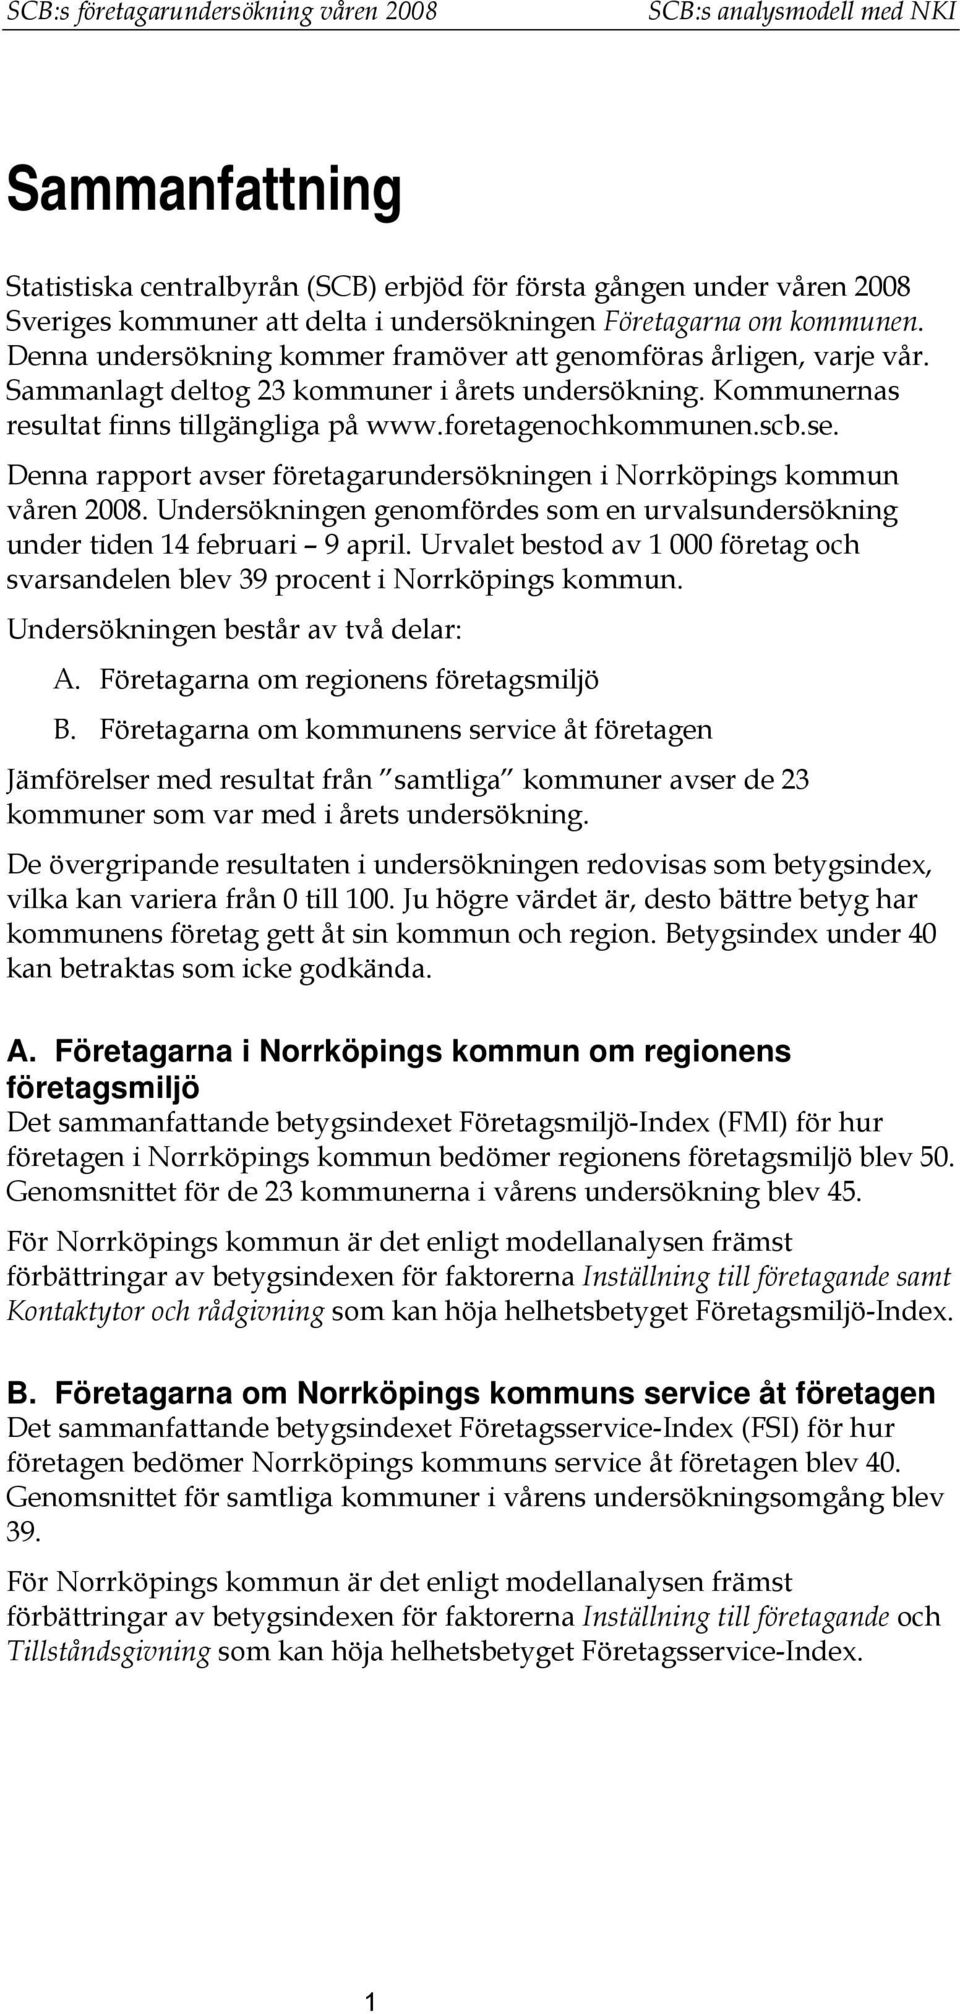 foretagenochkommunen.scb.se. Denna rapport avser företagarundersökningen i Norrköpings kommun våren 2008. Undersökningen genomfördes som en urvalsundersökning under tiden 14 februari 9 april.